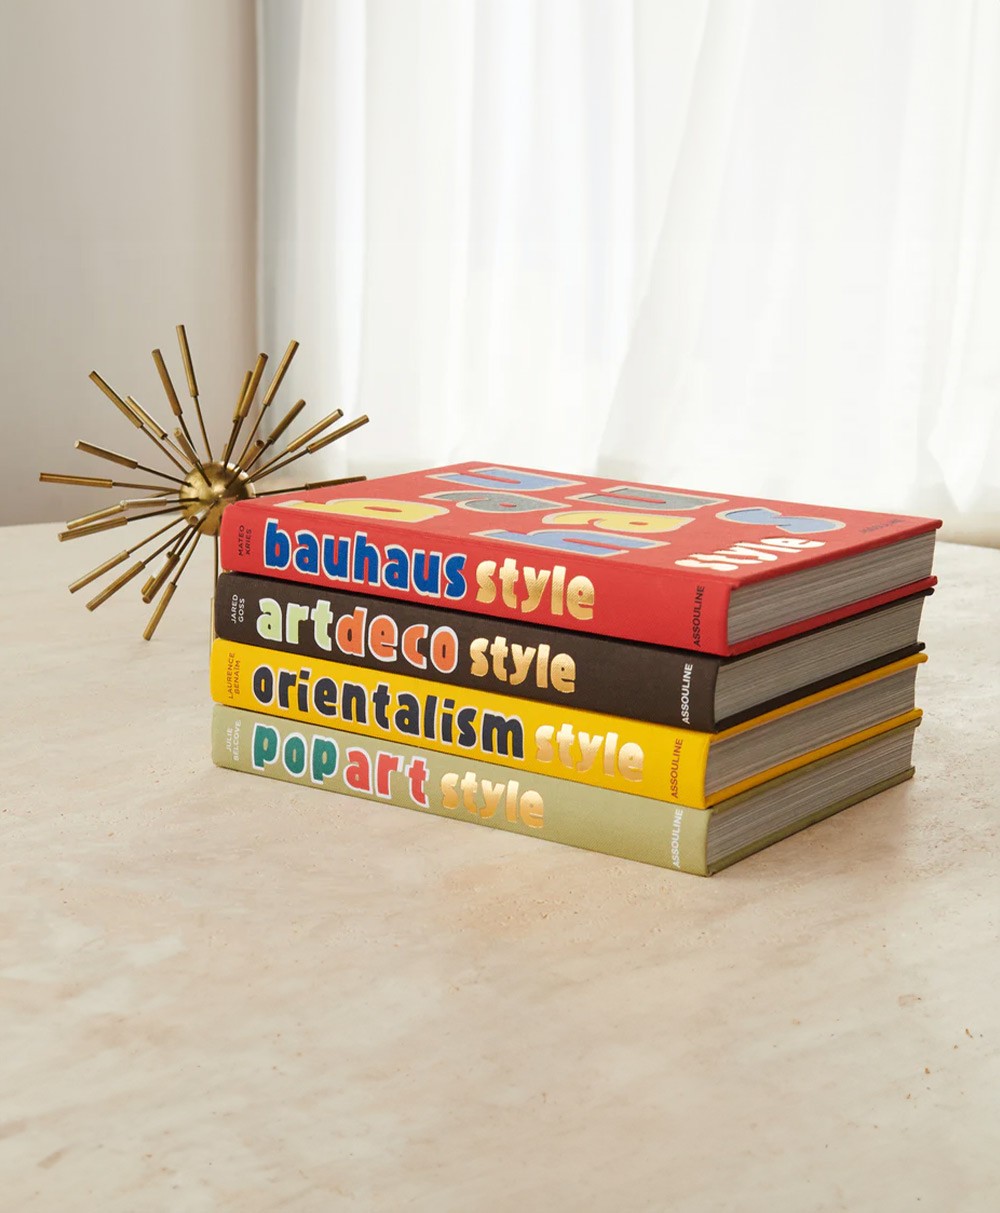 Moodbild des Coffee Table Books „Bauhaus Style“ von Assouline im RAUM concept store 